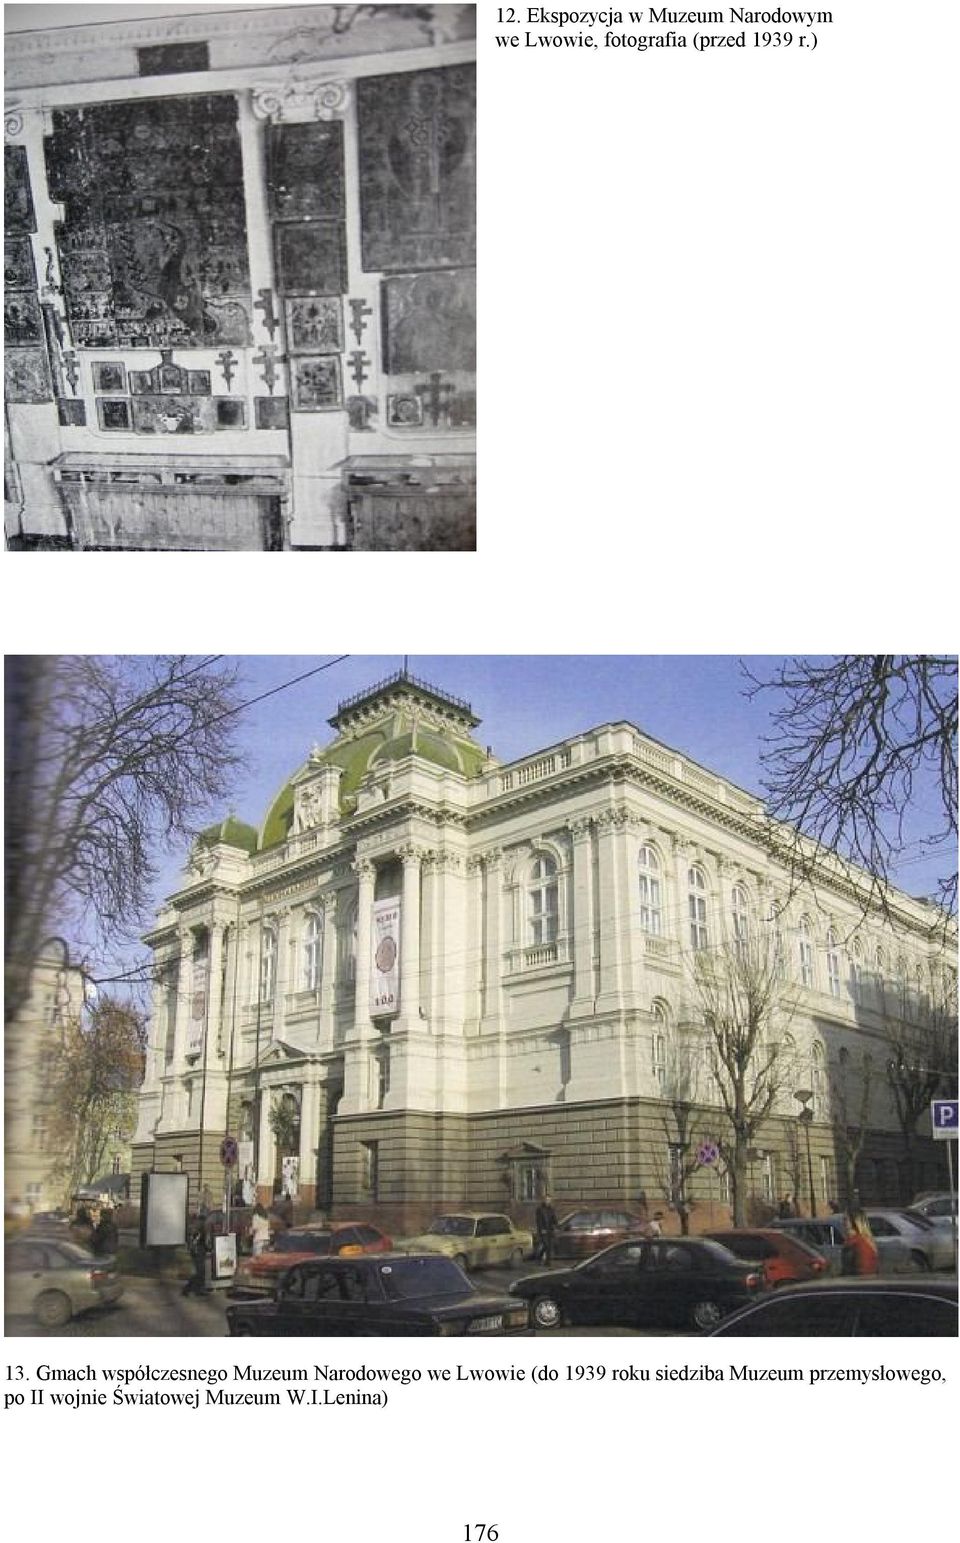 Gmach współczesnego Muzeum Narodowego we Lwowie (do